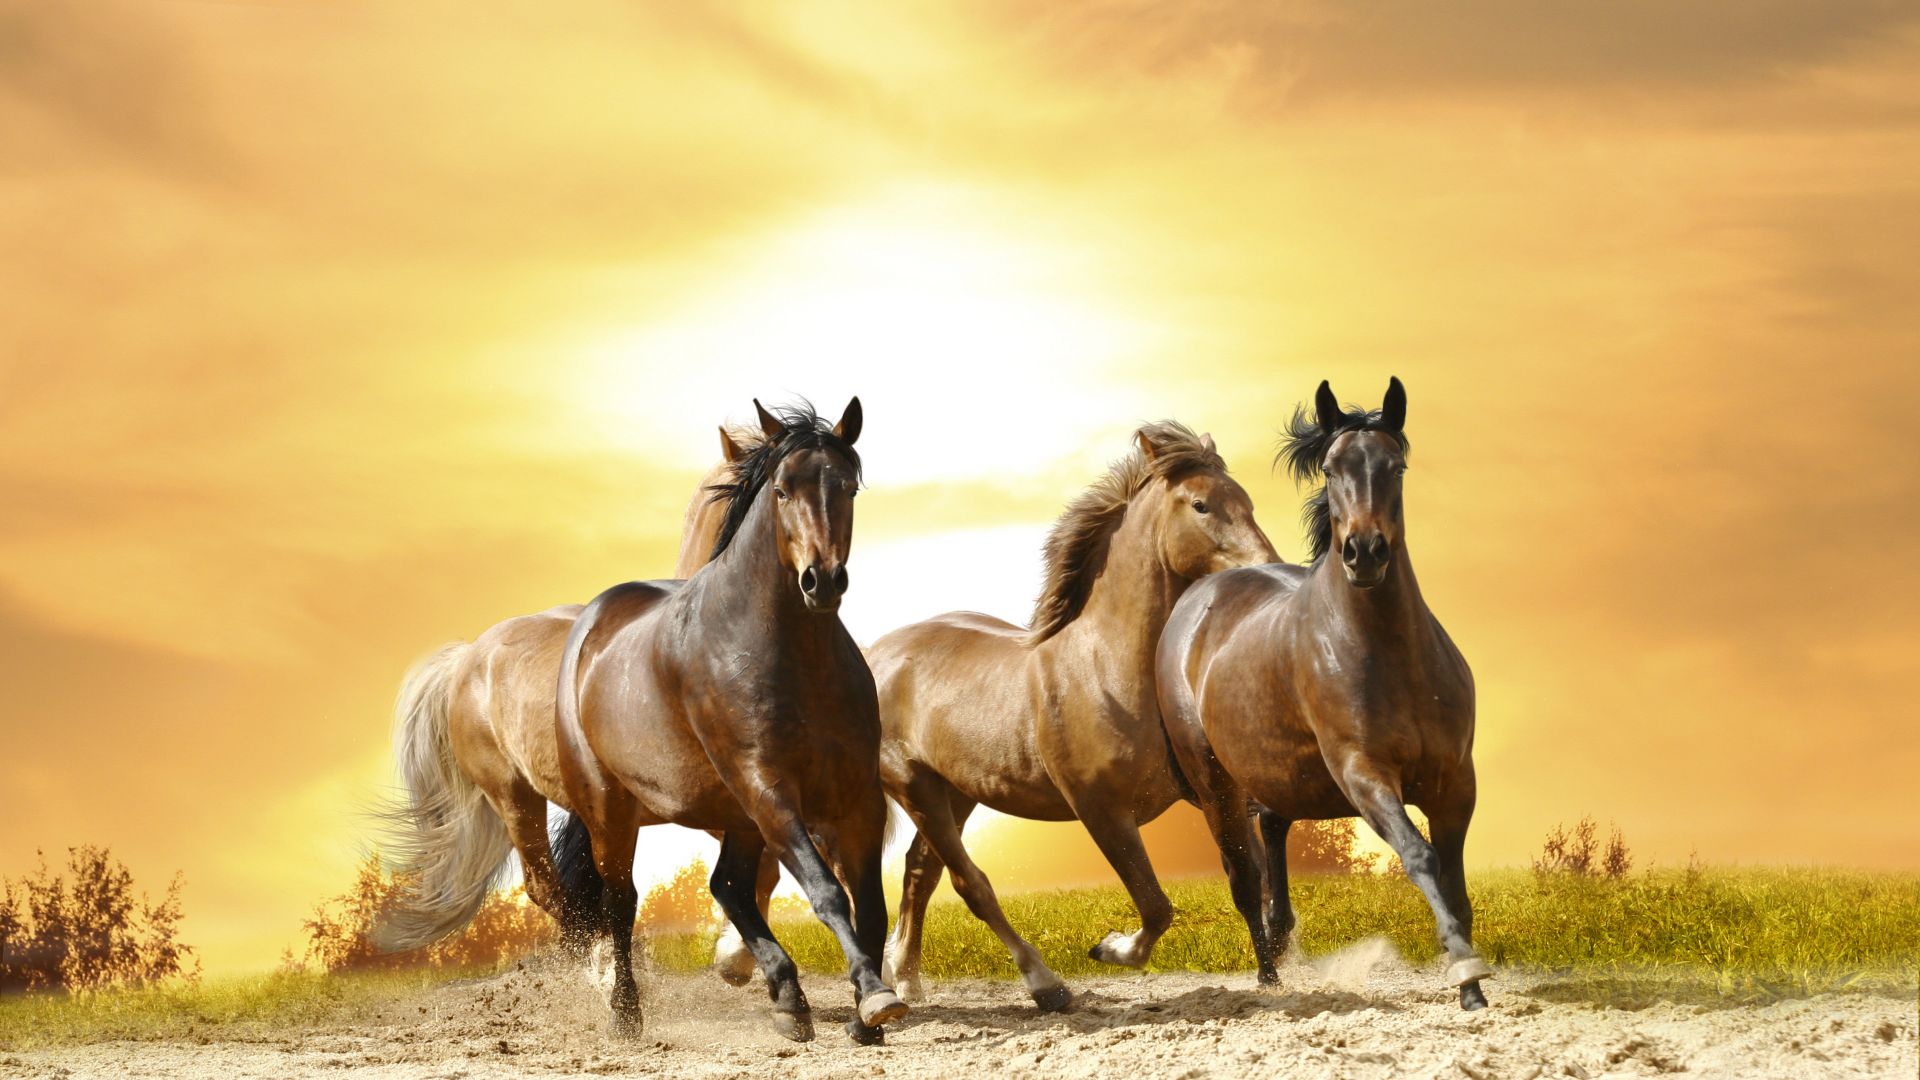 лошади, horses, cute animals, 8k (horizontal)